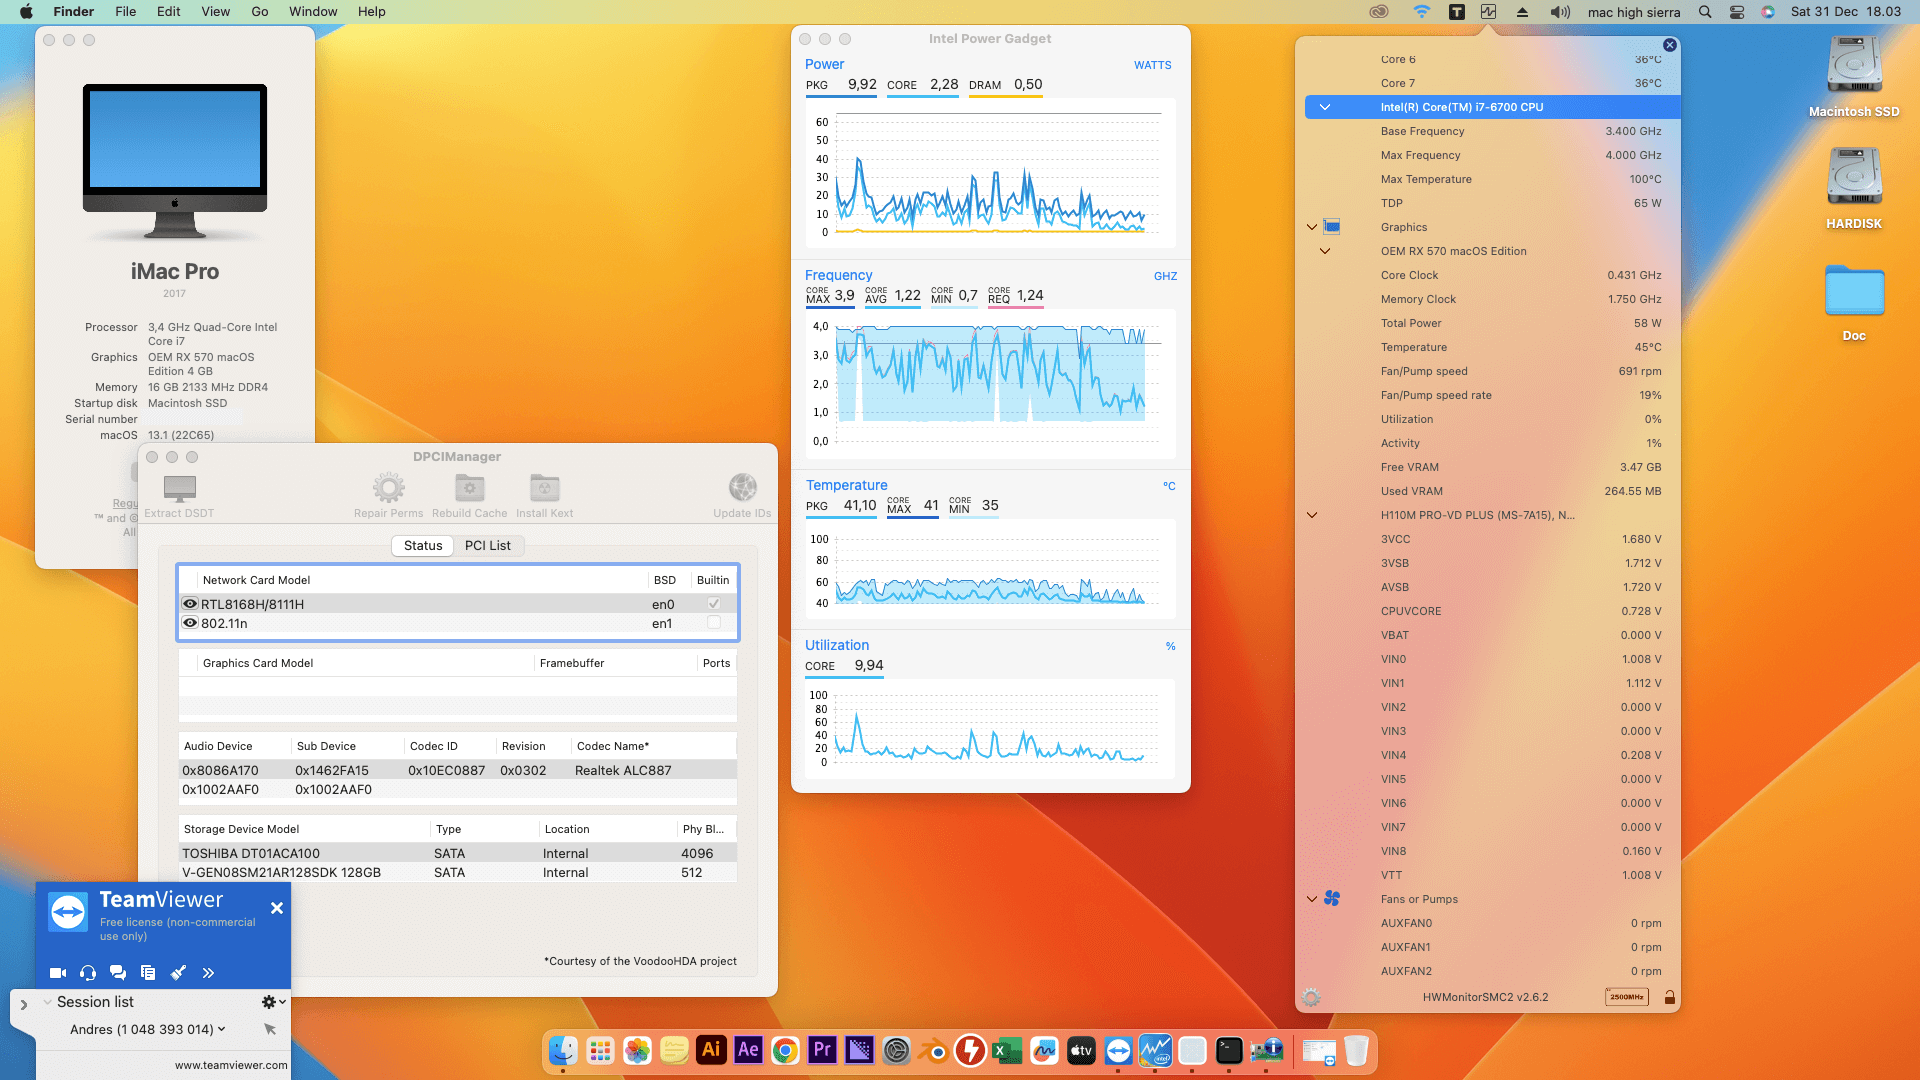 Success Hackintosh macOS Ventura 13.1 Build 22C65 in MSI H110M PRO-VD PLUS + Intel Core i7 6700 + OEM RX 570